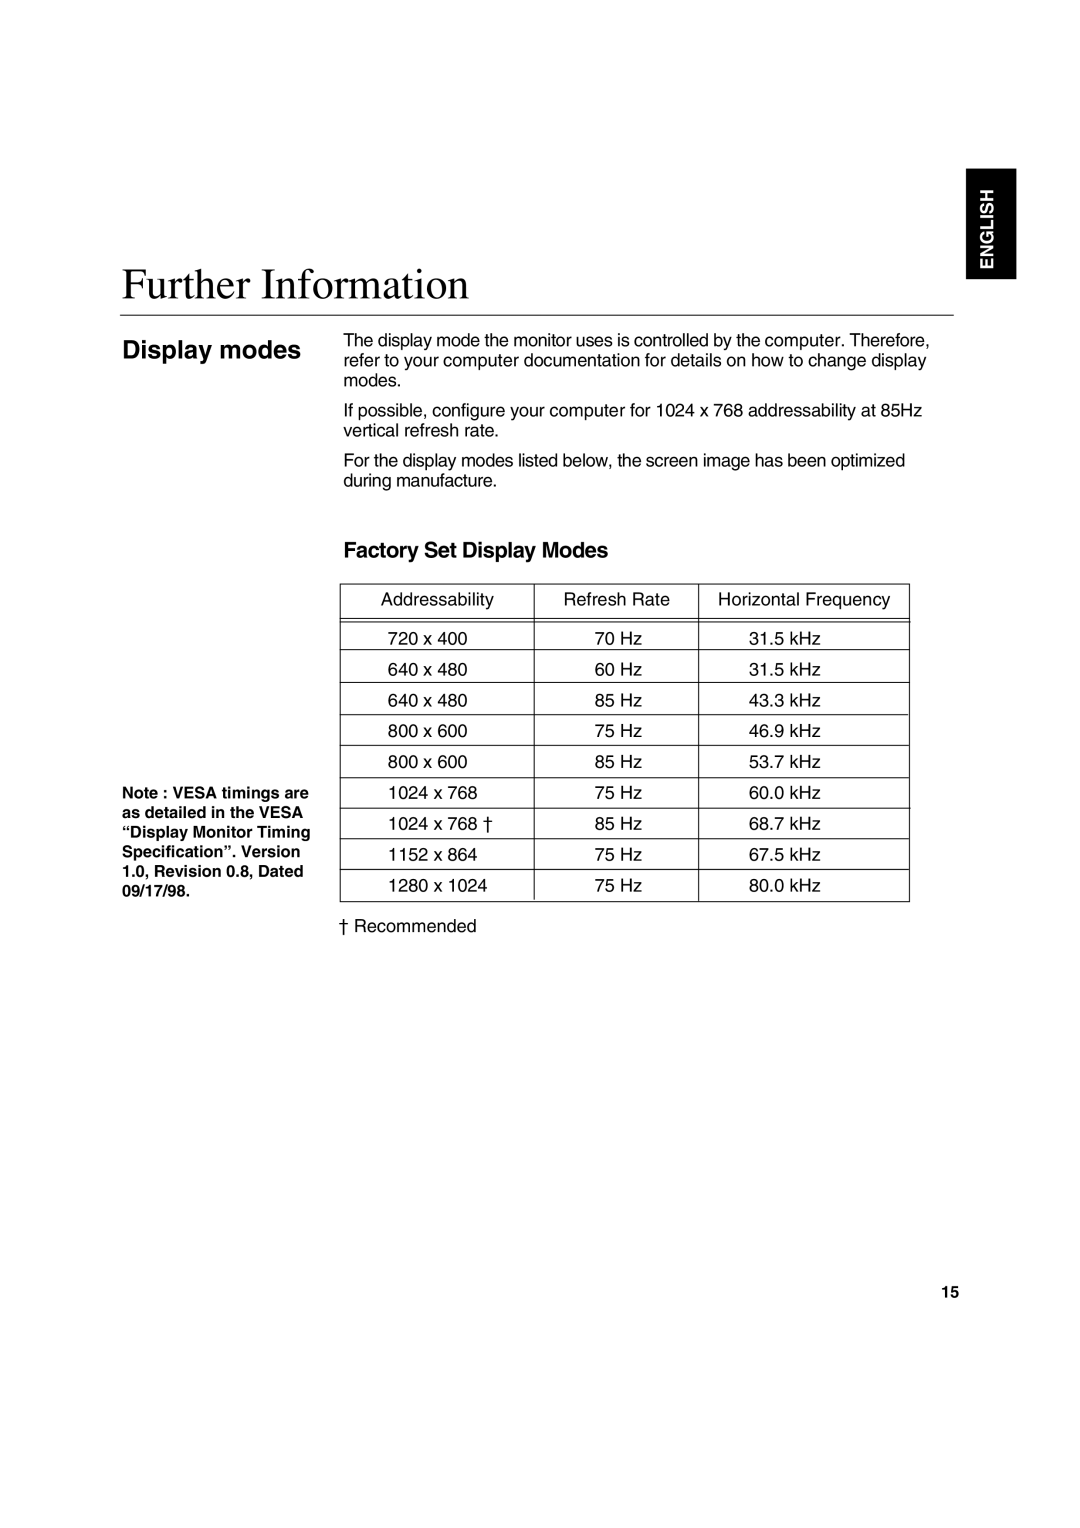 IBM C170 manual Further Information, Factory Set Display Modes, English 